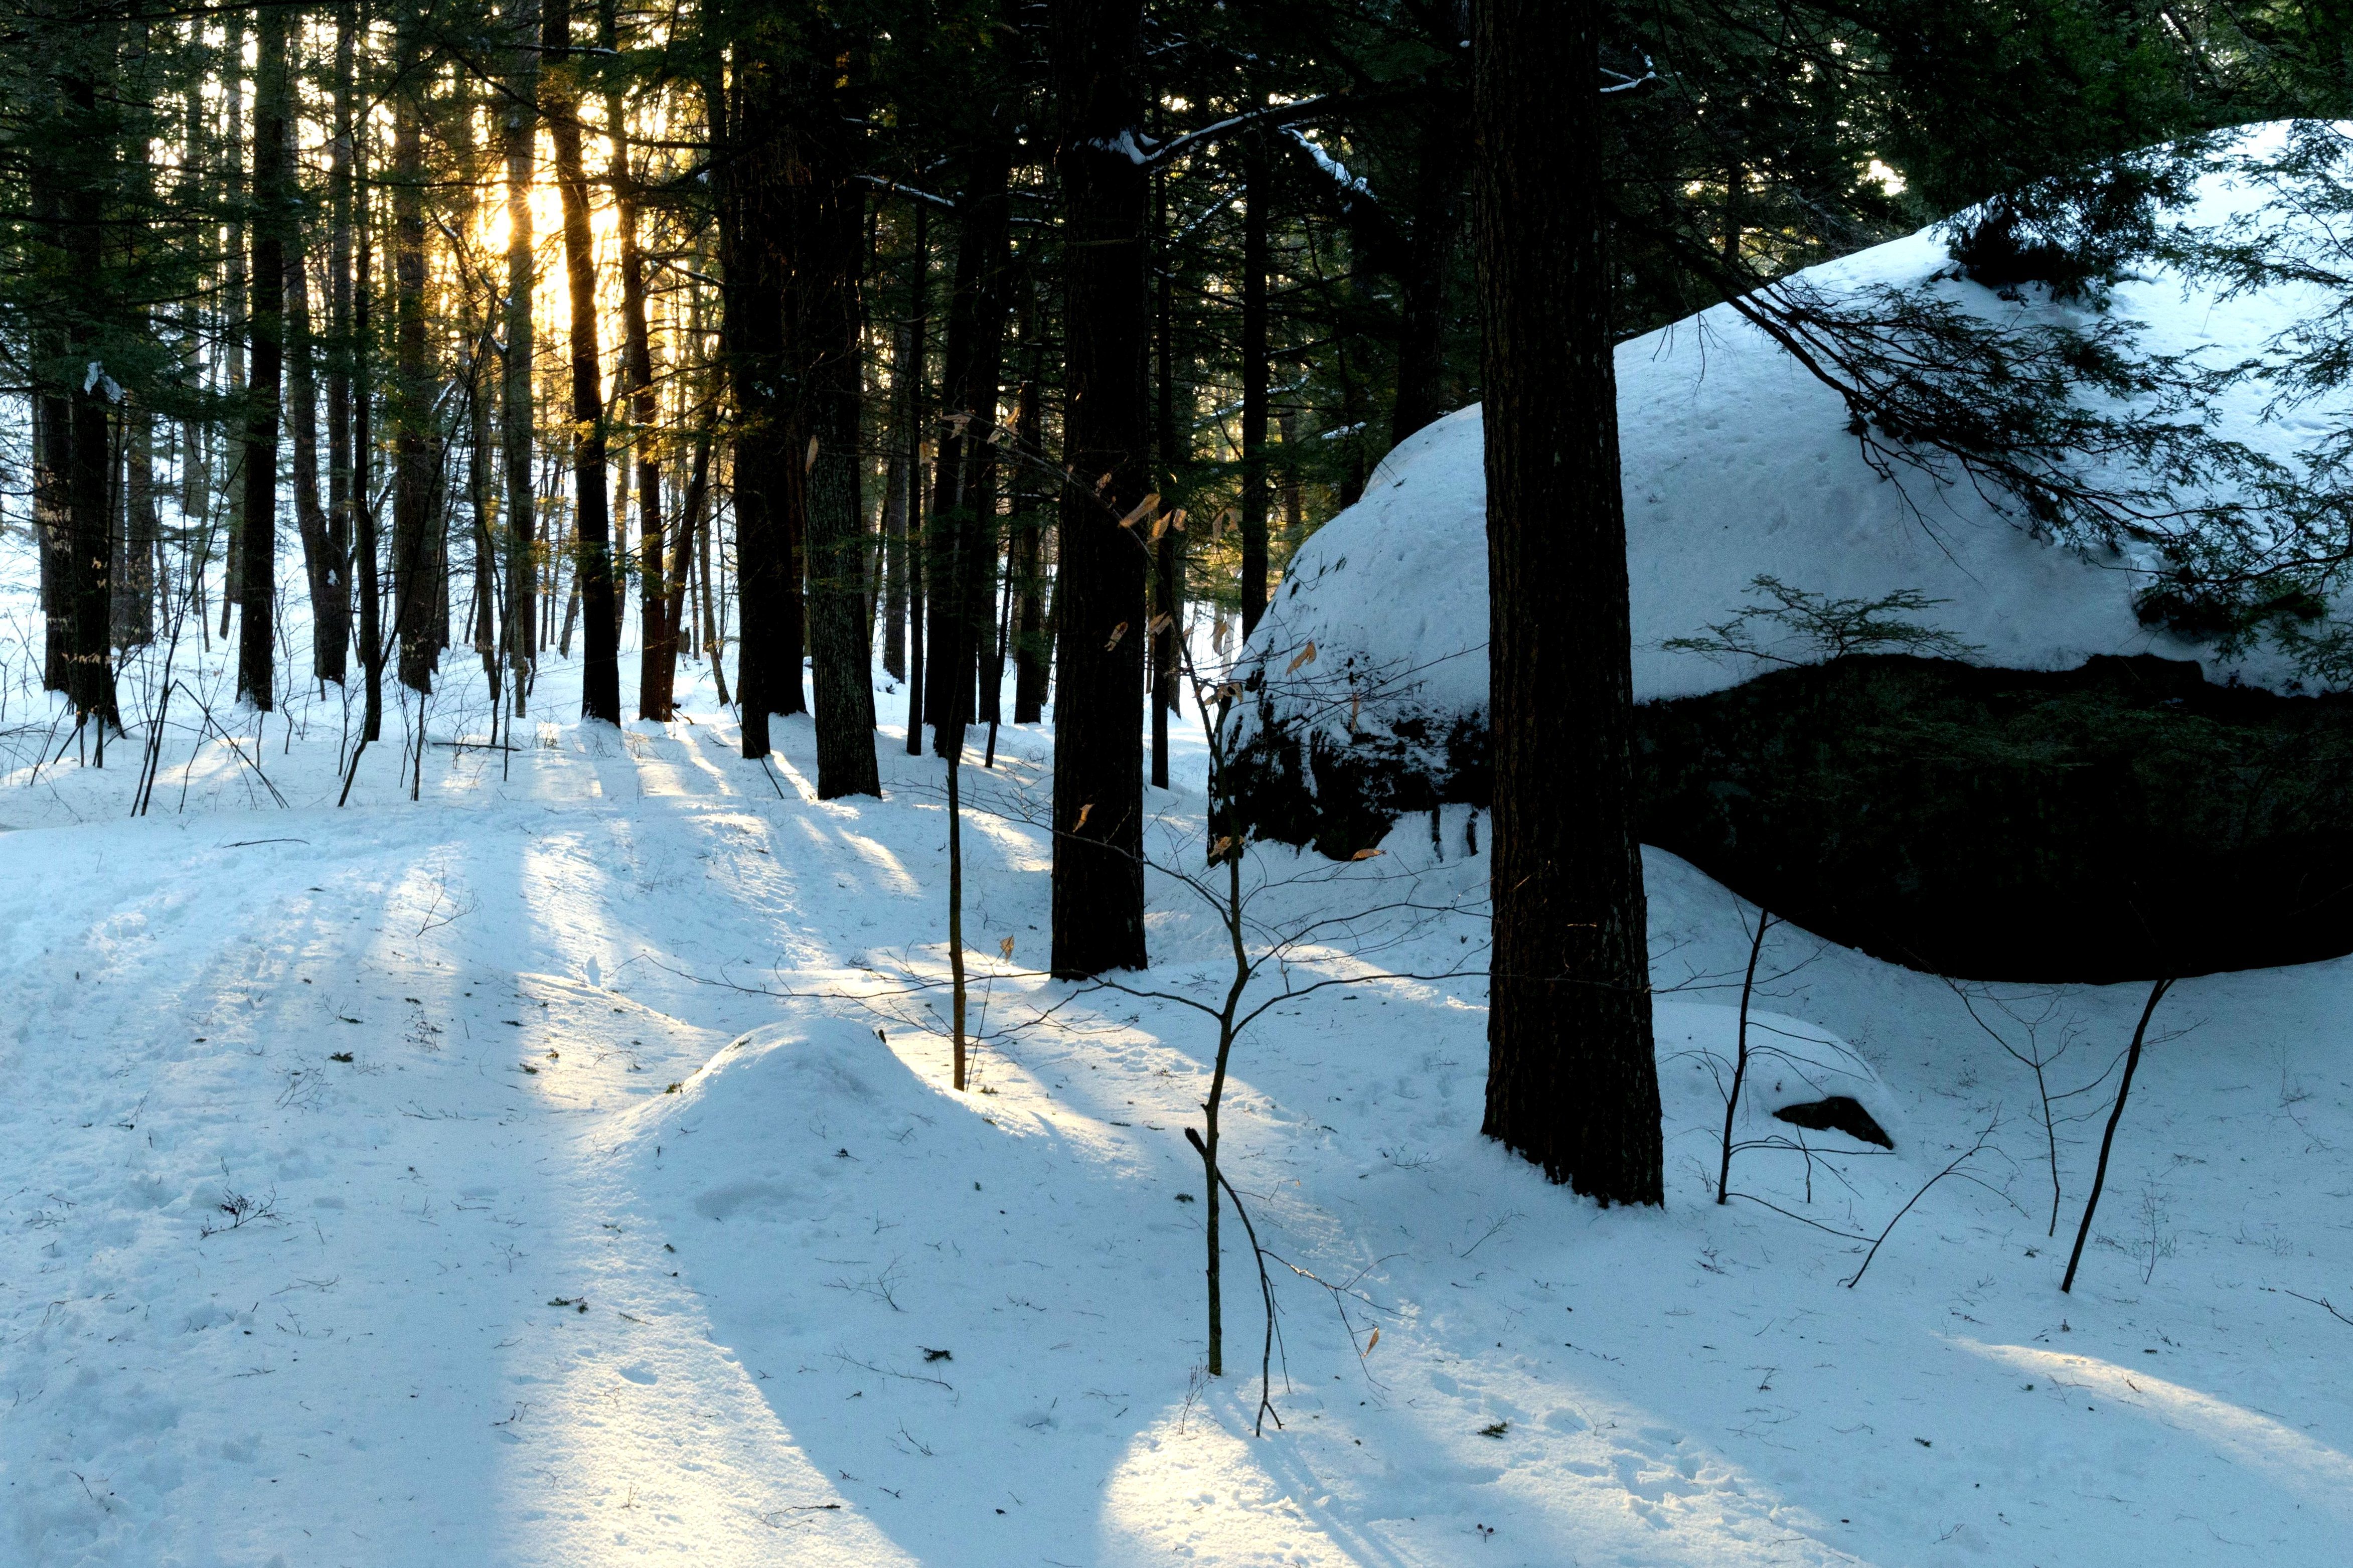 Hình ảnh miễn phí: rừng, mùa đông, cây, thiên nhiên, phong cảnh, ánh sáng  mặt trời, tuyết, mùa đông